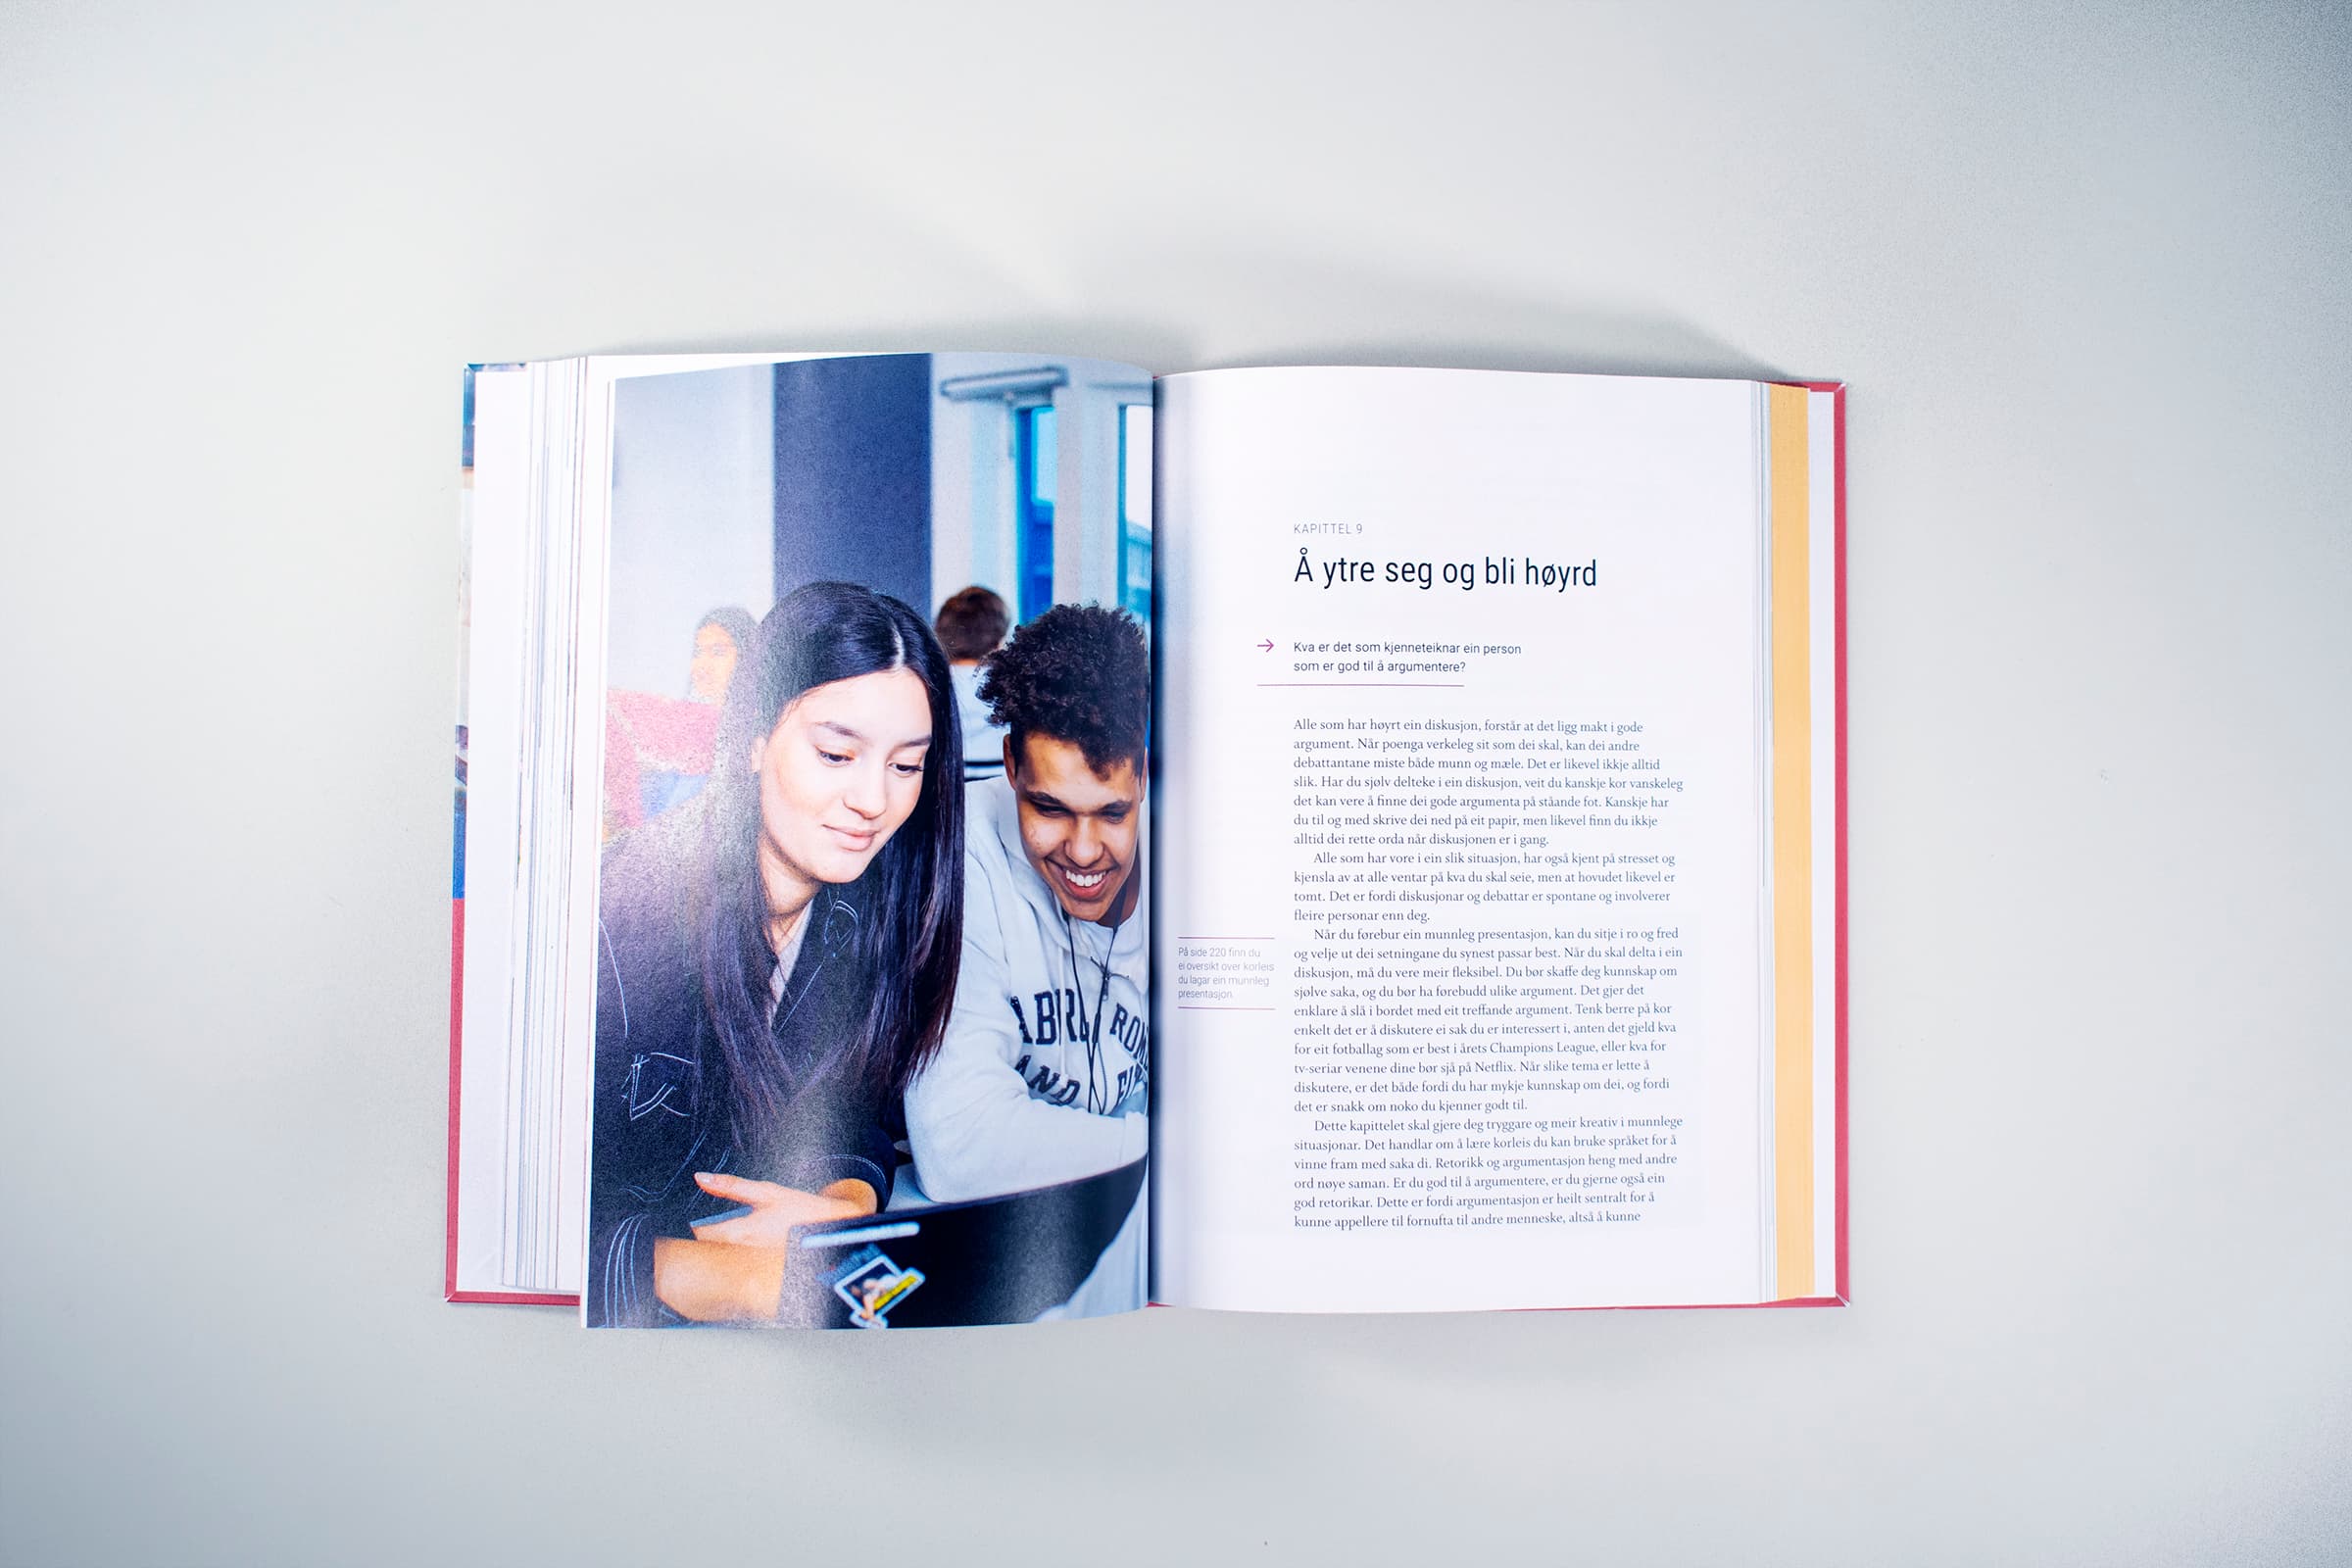 Bildet viser hvordan en kapittelstart i boken ser ut. På venstre side er det et bilde av to personer som ser på en skjerm sammen, og på høyre side er det en kapitteltittel og brødtekst.